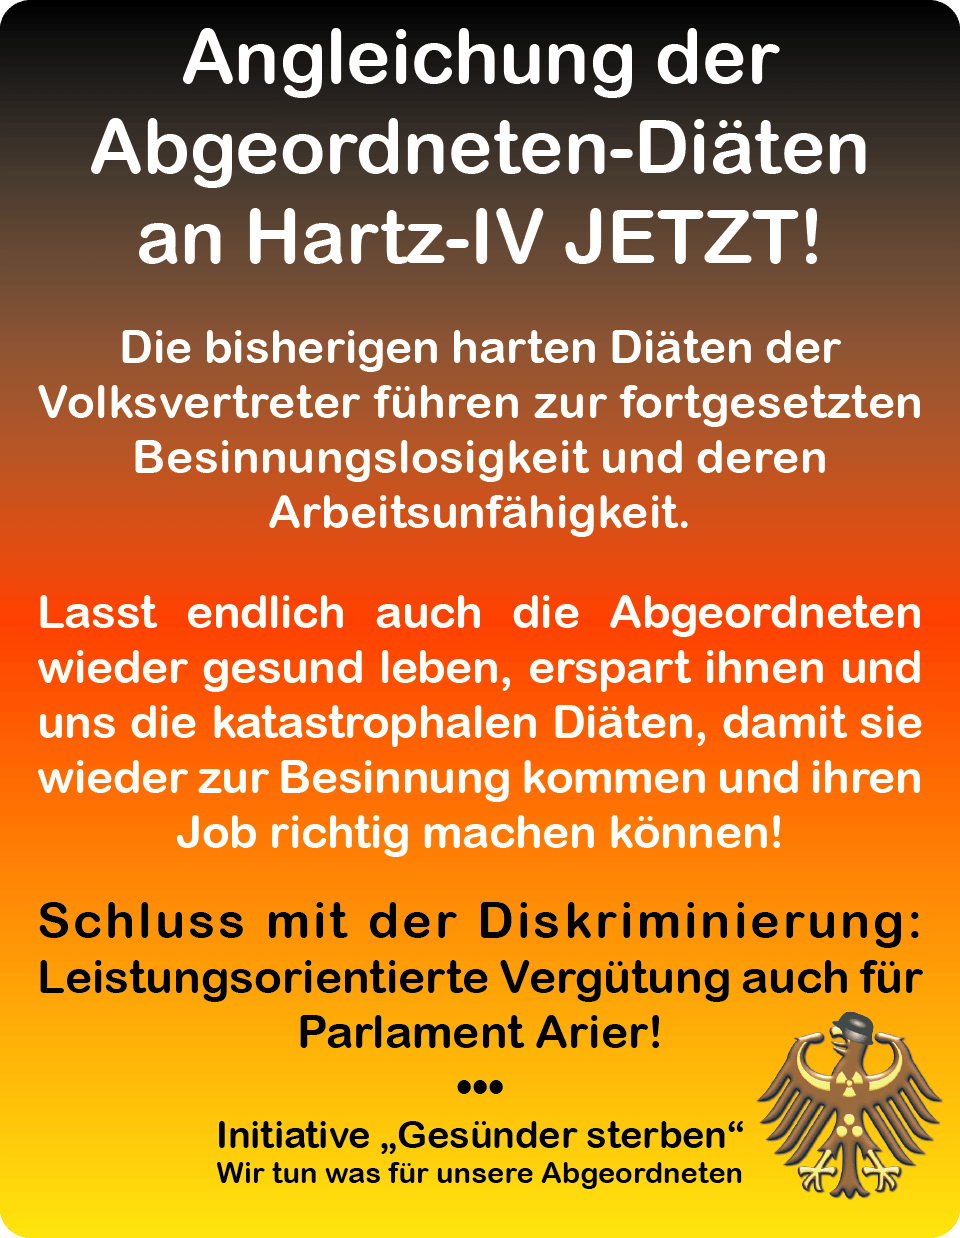 Anti-Diäten-Tag wird vom Bundestag ignoriert Angleichung-der-Diäten-an-Hartz-IV